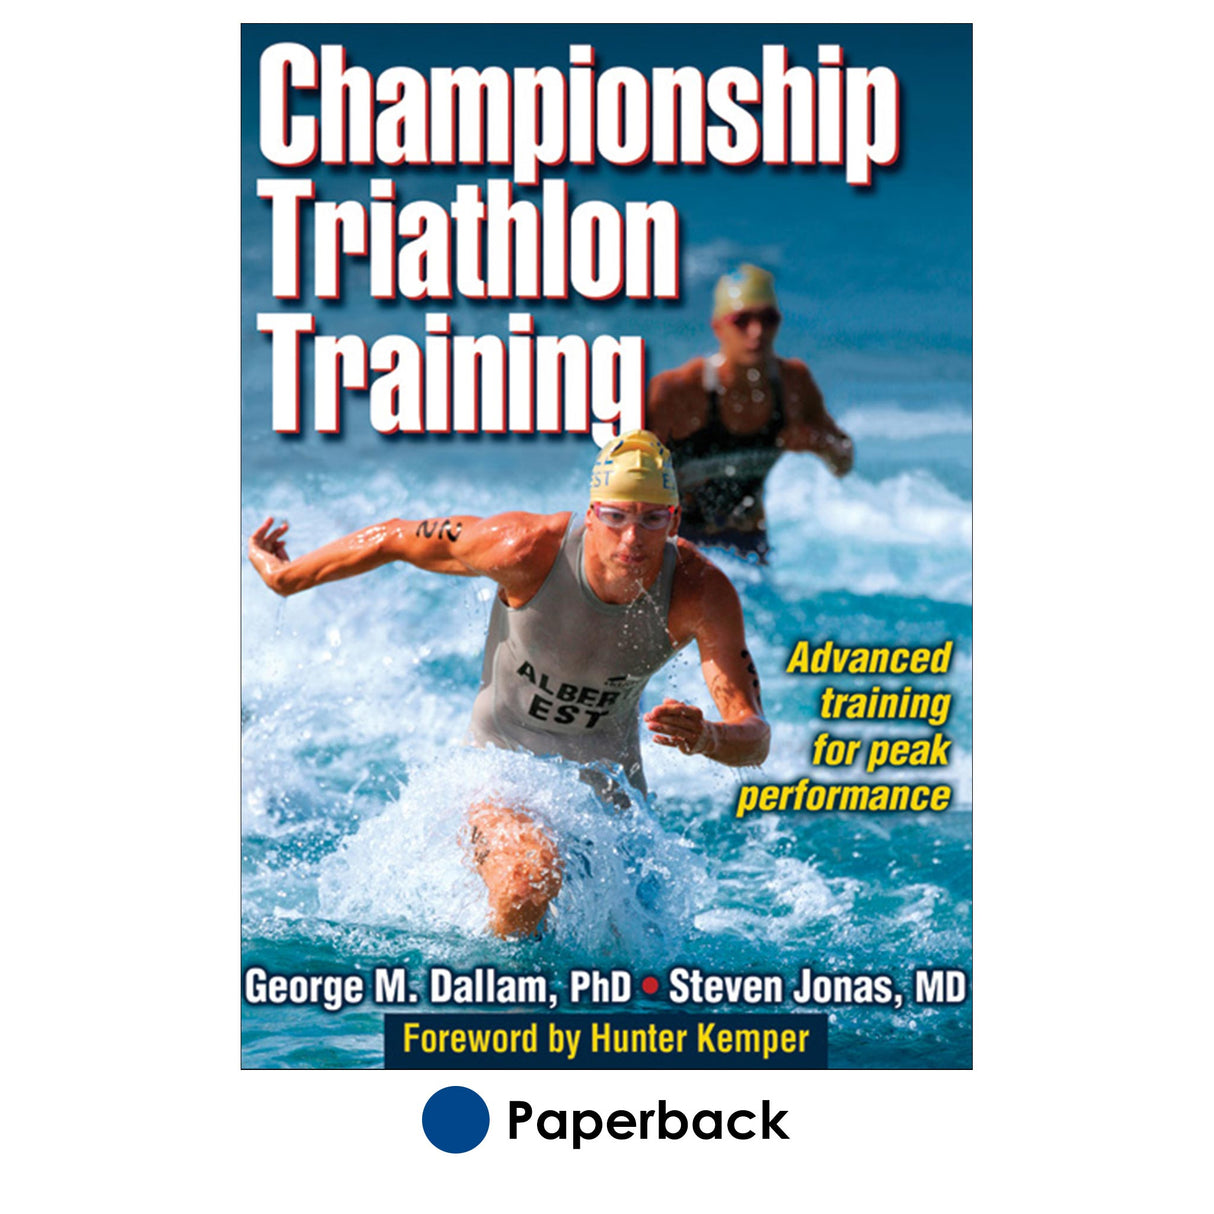 Championship Triathlon Training